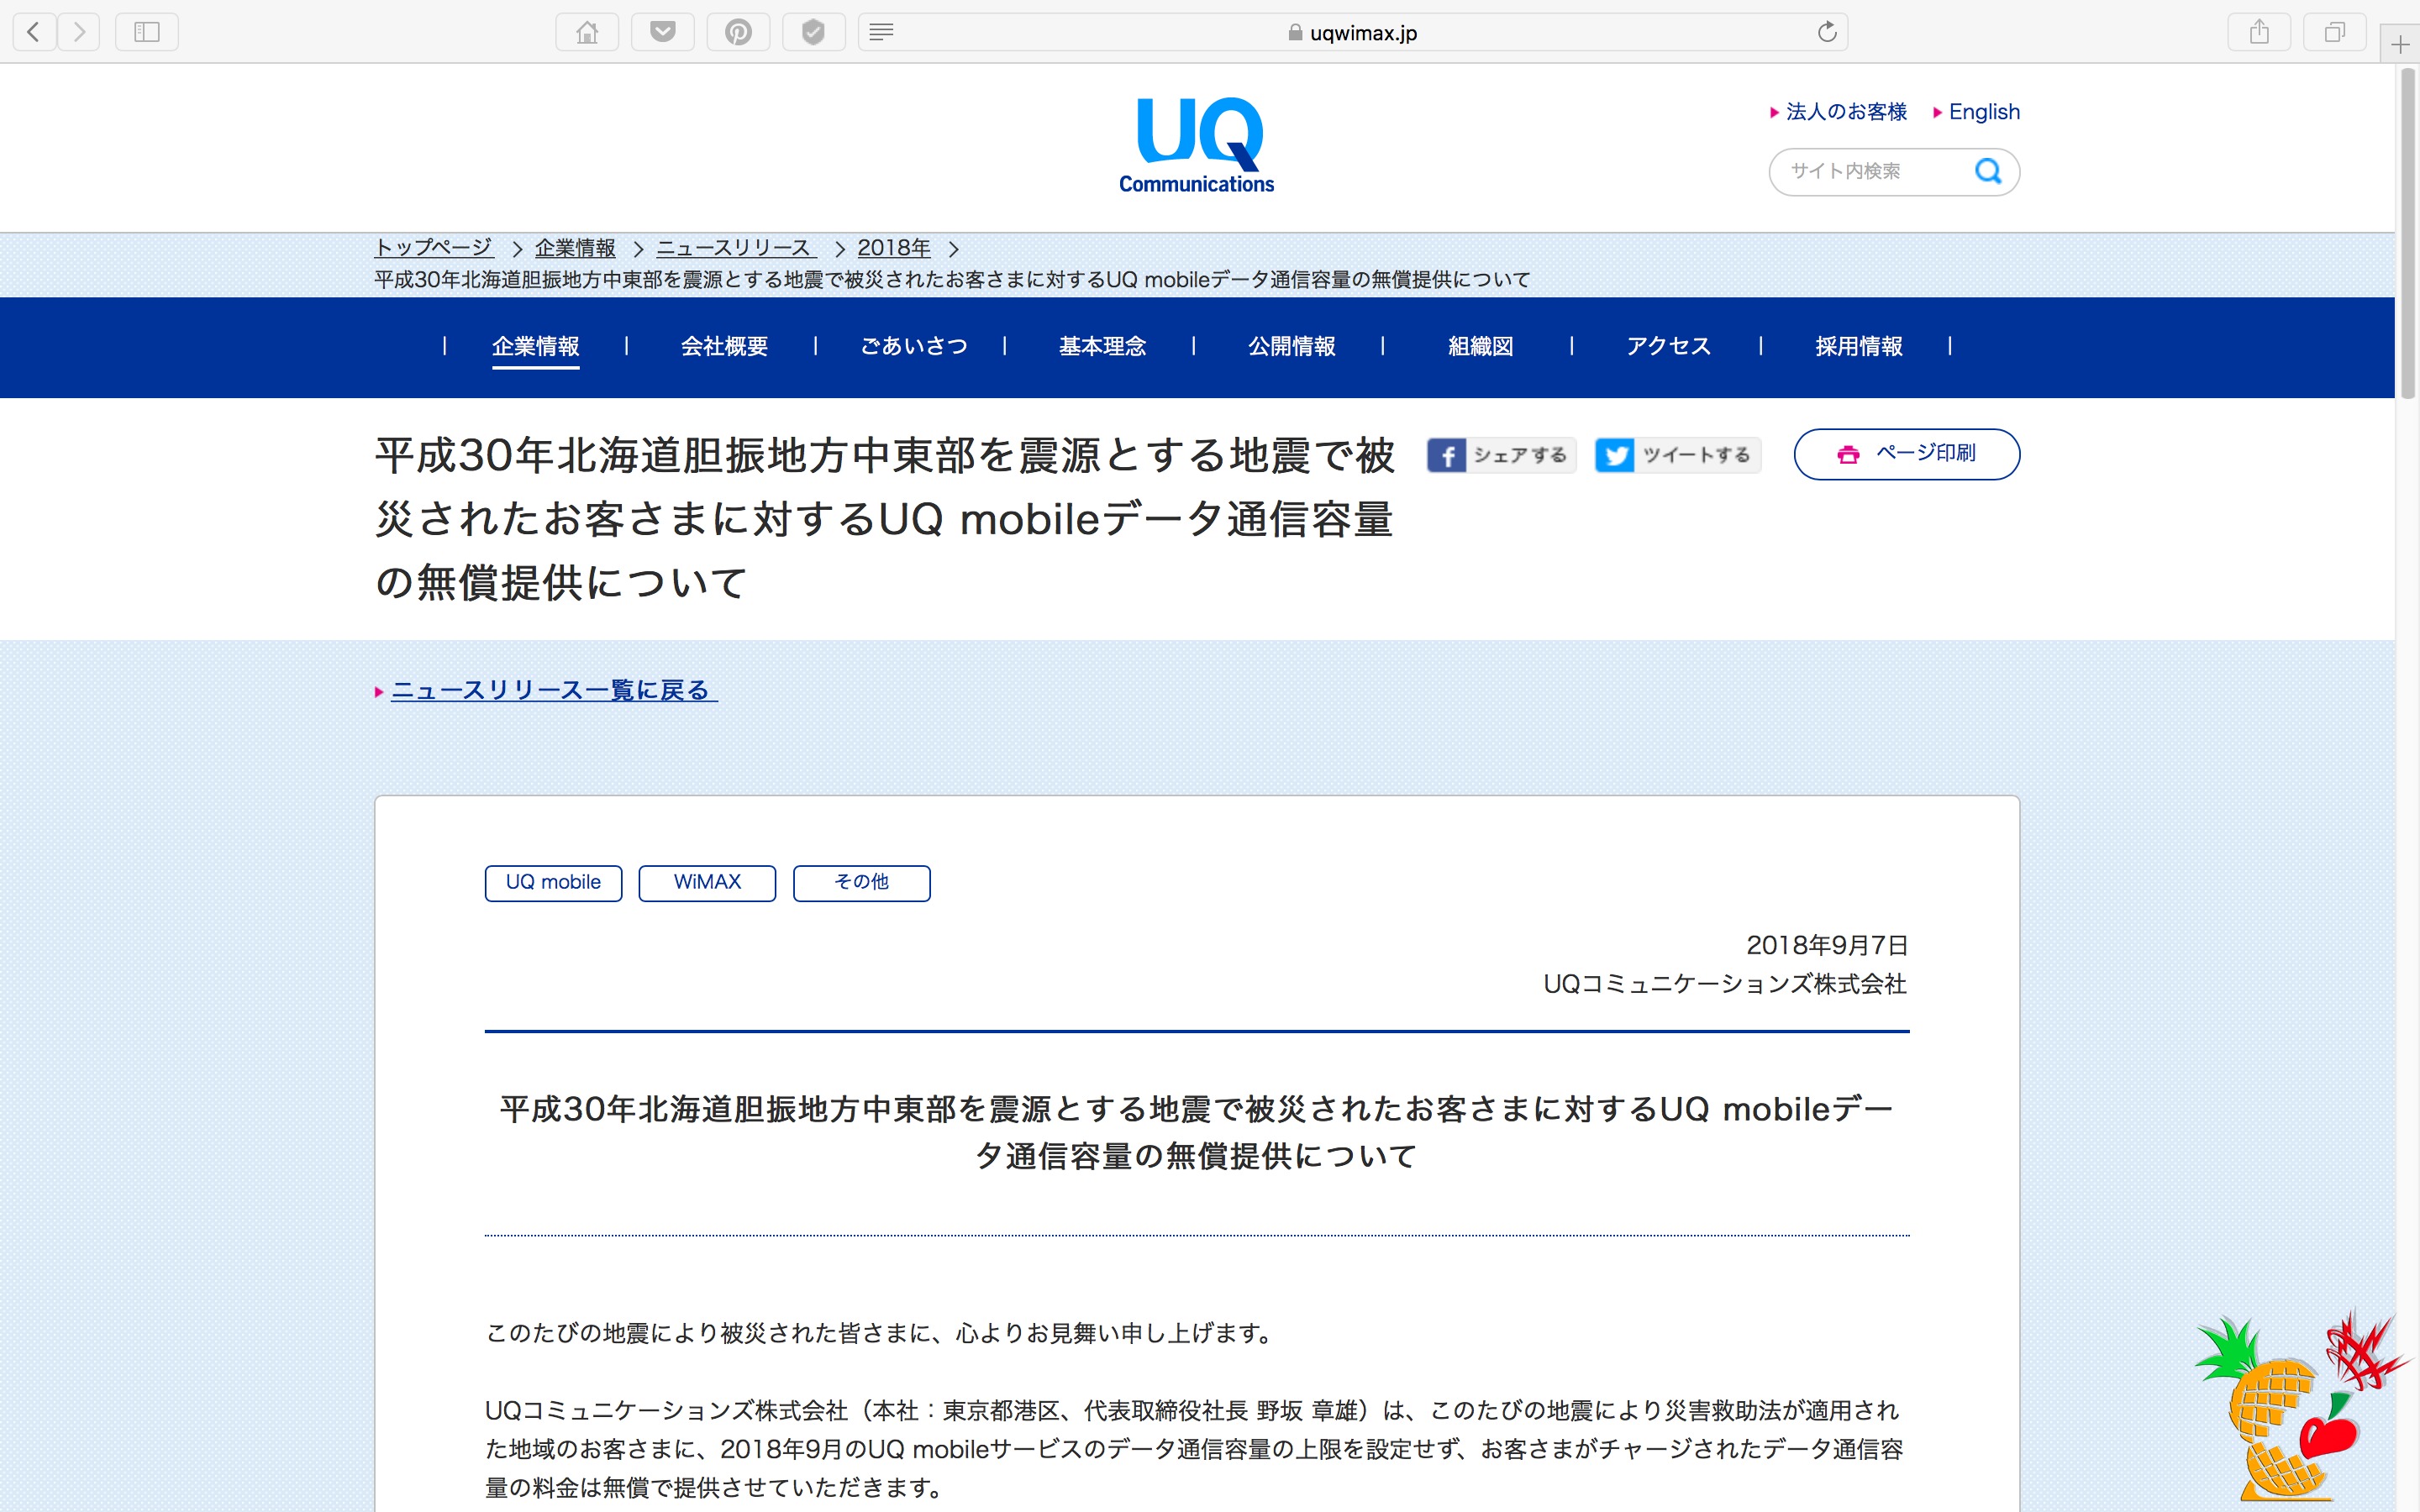 平成 30年北海道胆振地方中東部を震源とする地震で被災されたお客さまに対する UQ mobile データ通信容量の無償提供について